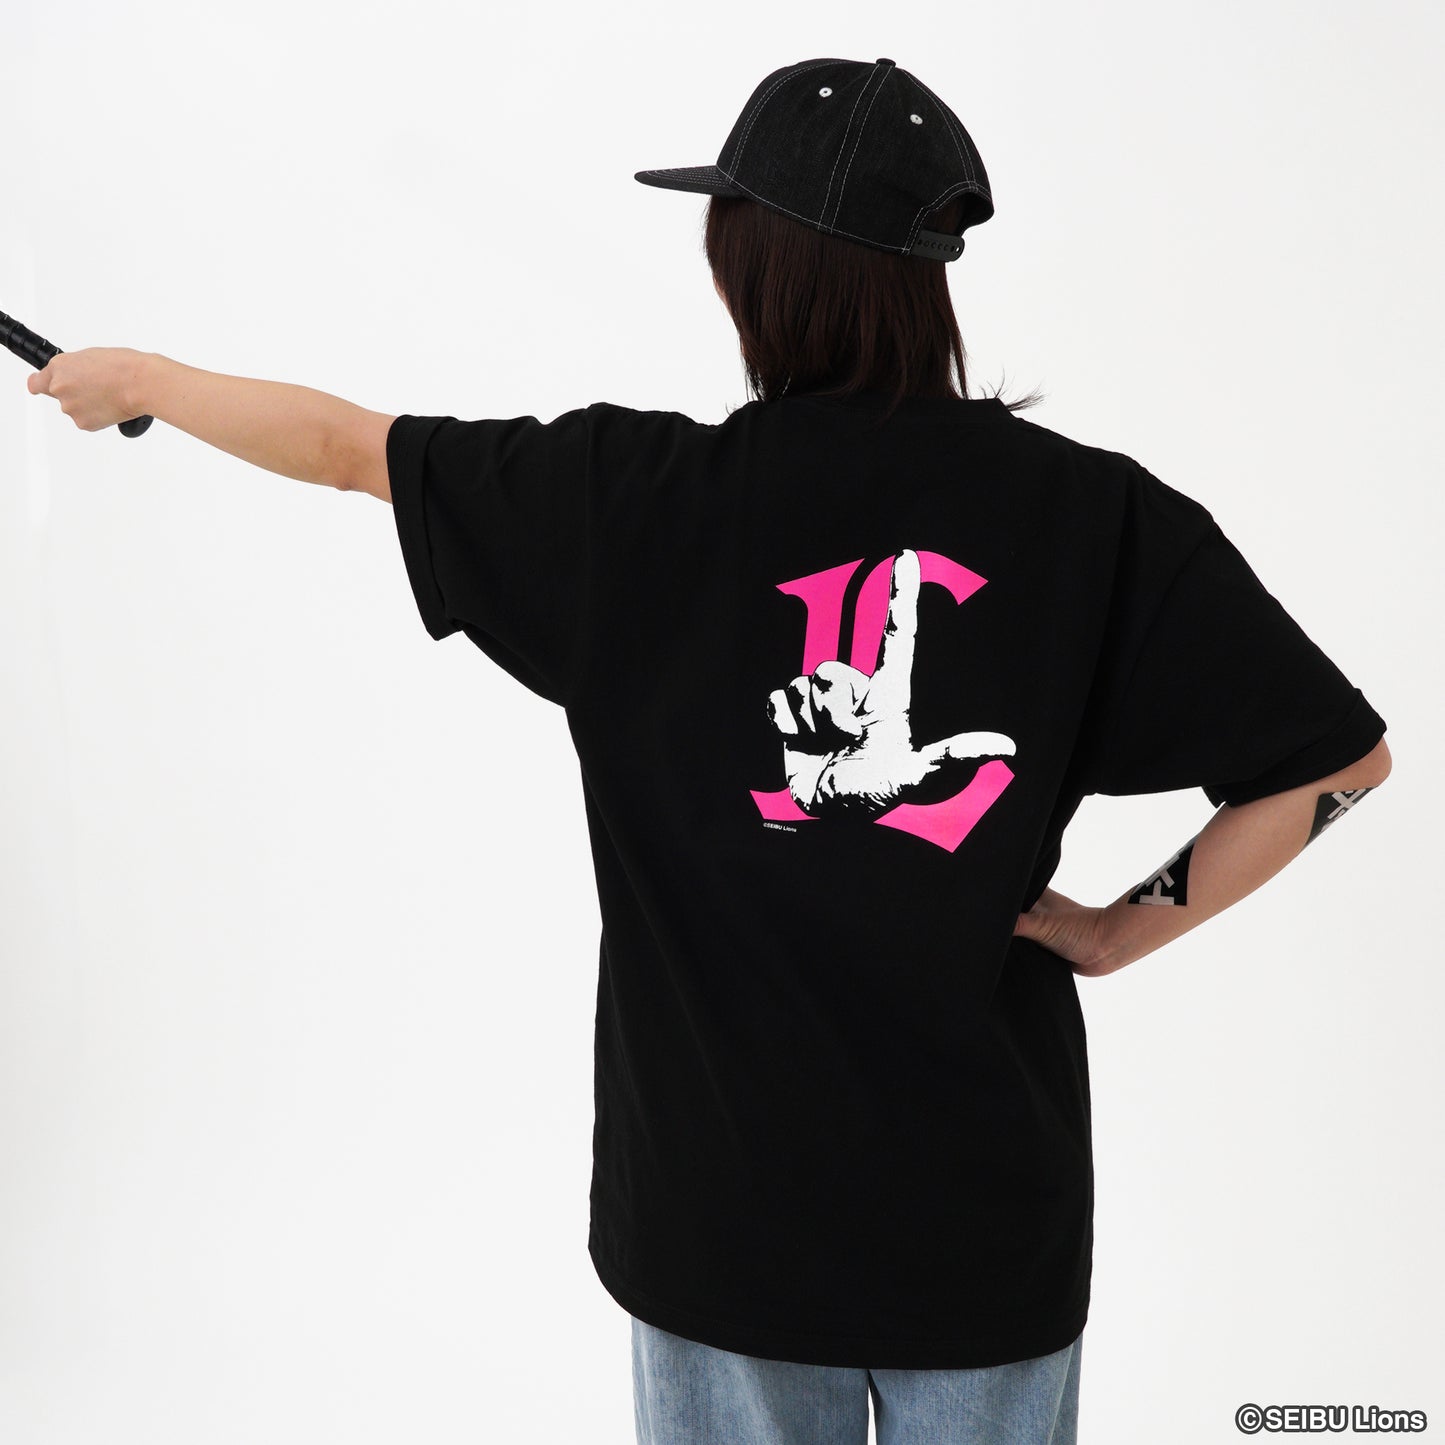 オードリー春日×ライオンズ「L」トゥース!! Tシャツ byTENPLUS